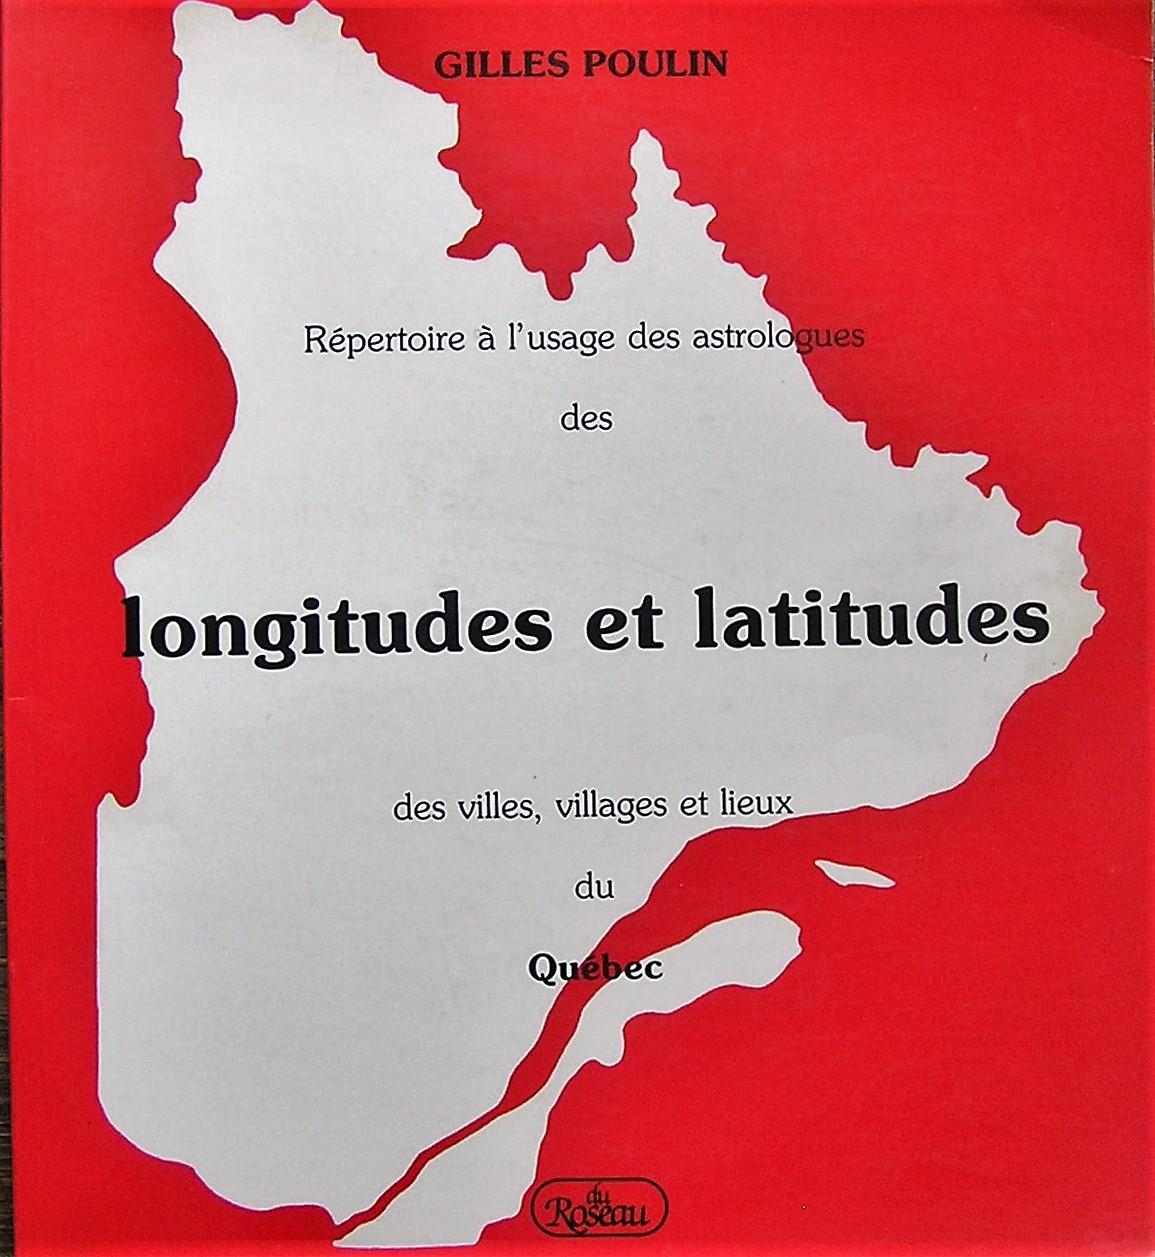 POULIN, Gilles: Répertoire à l'usage des astrologues des longitudes et latitudes des villes, villages et lieux du Québec